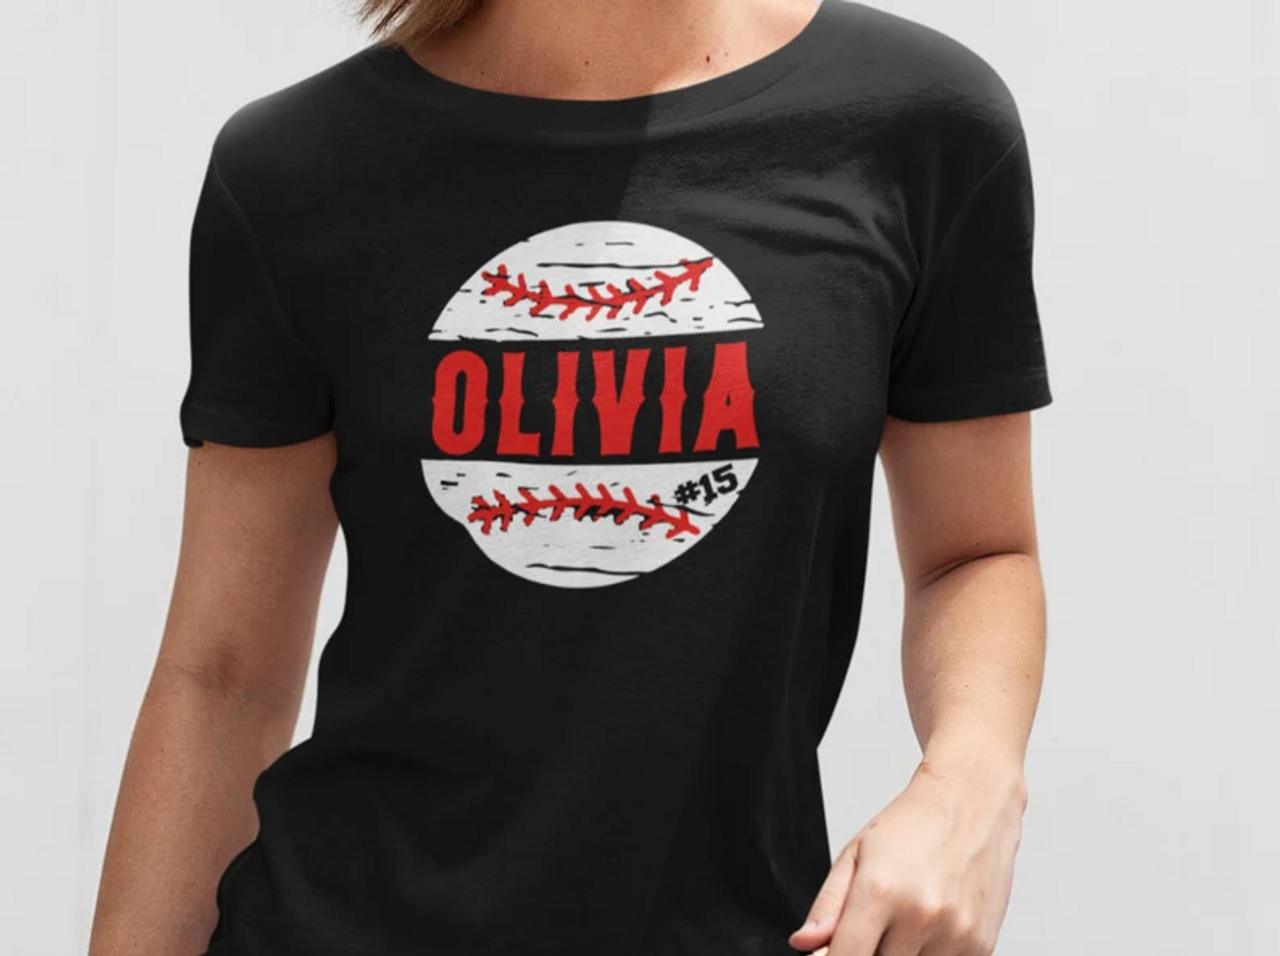 Softball T-Shirt Designs - Designs For Custom Softball T-Shirts